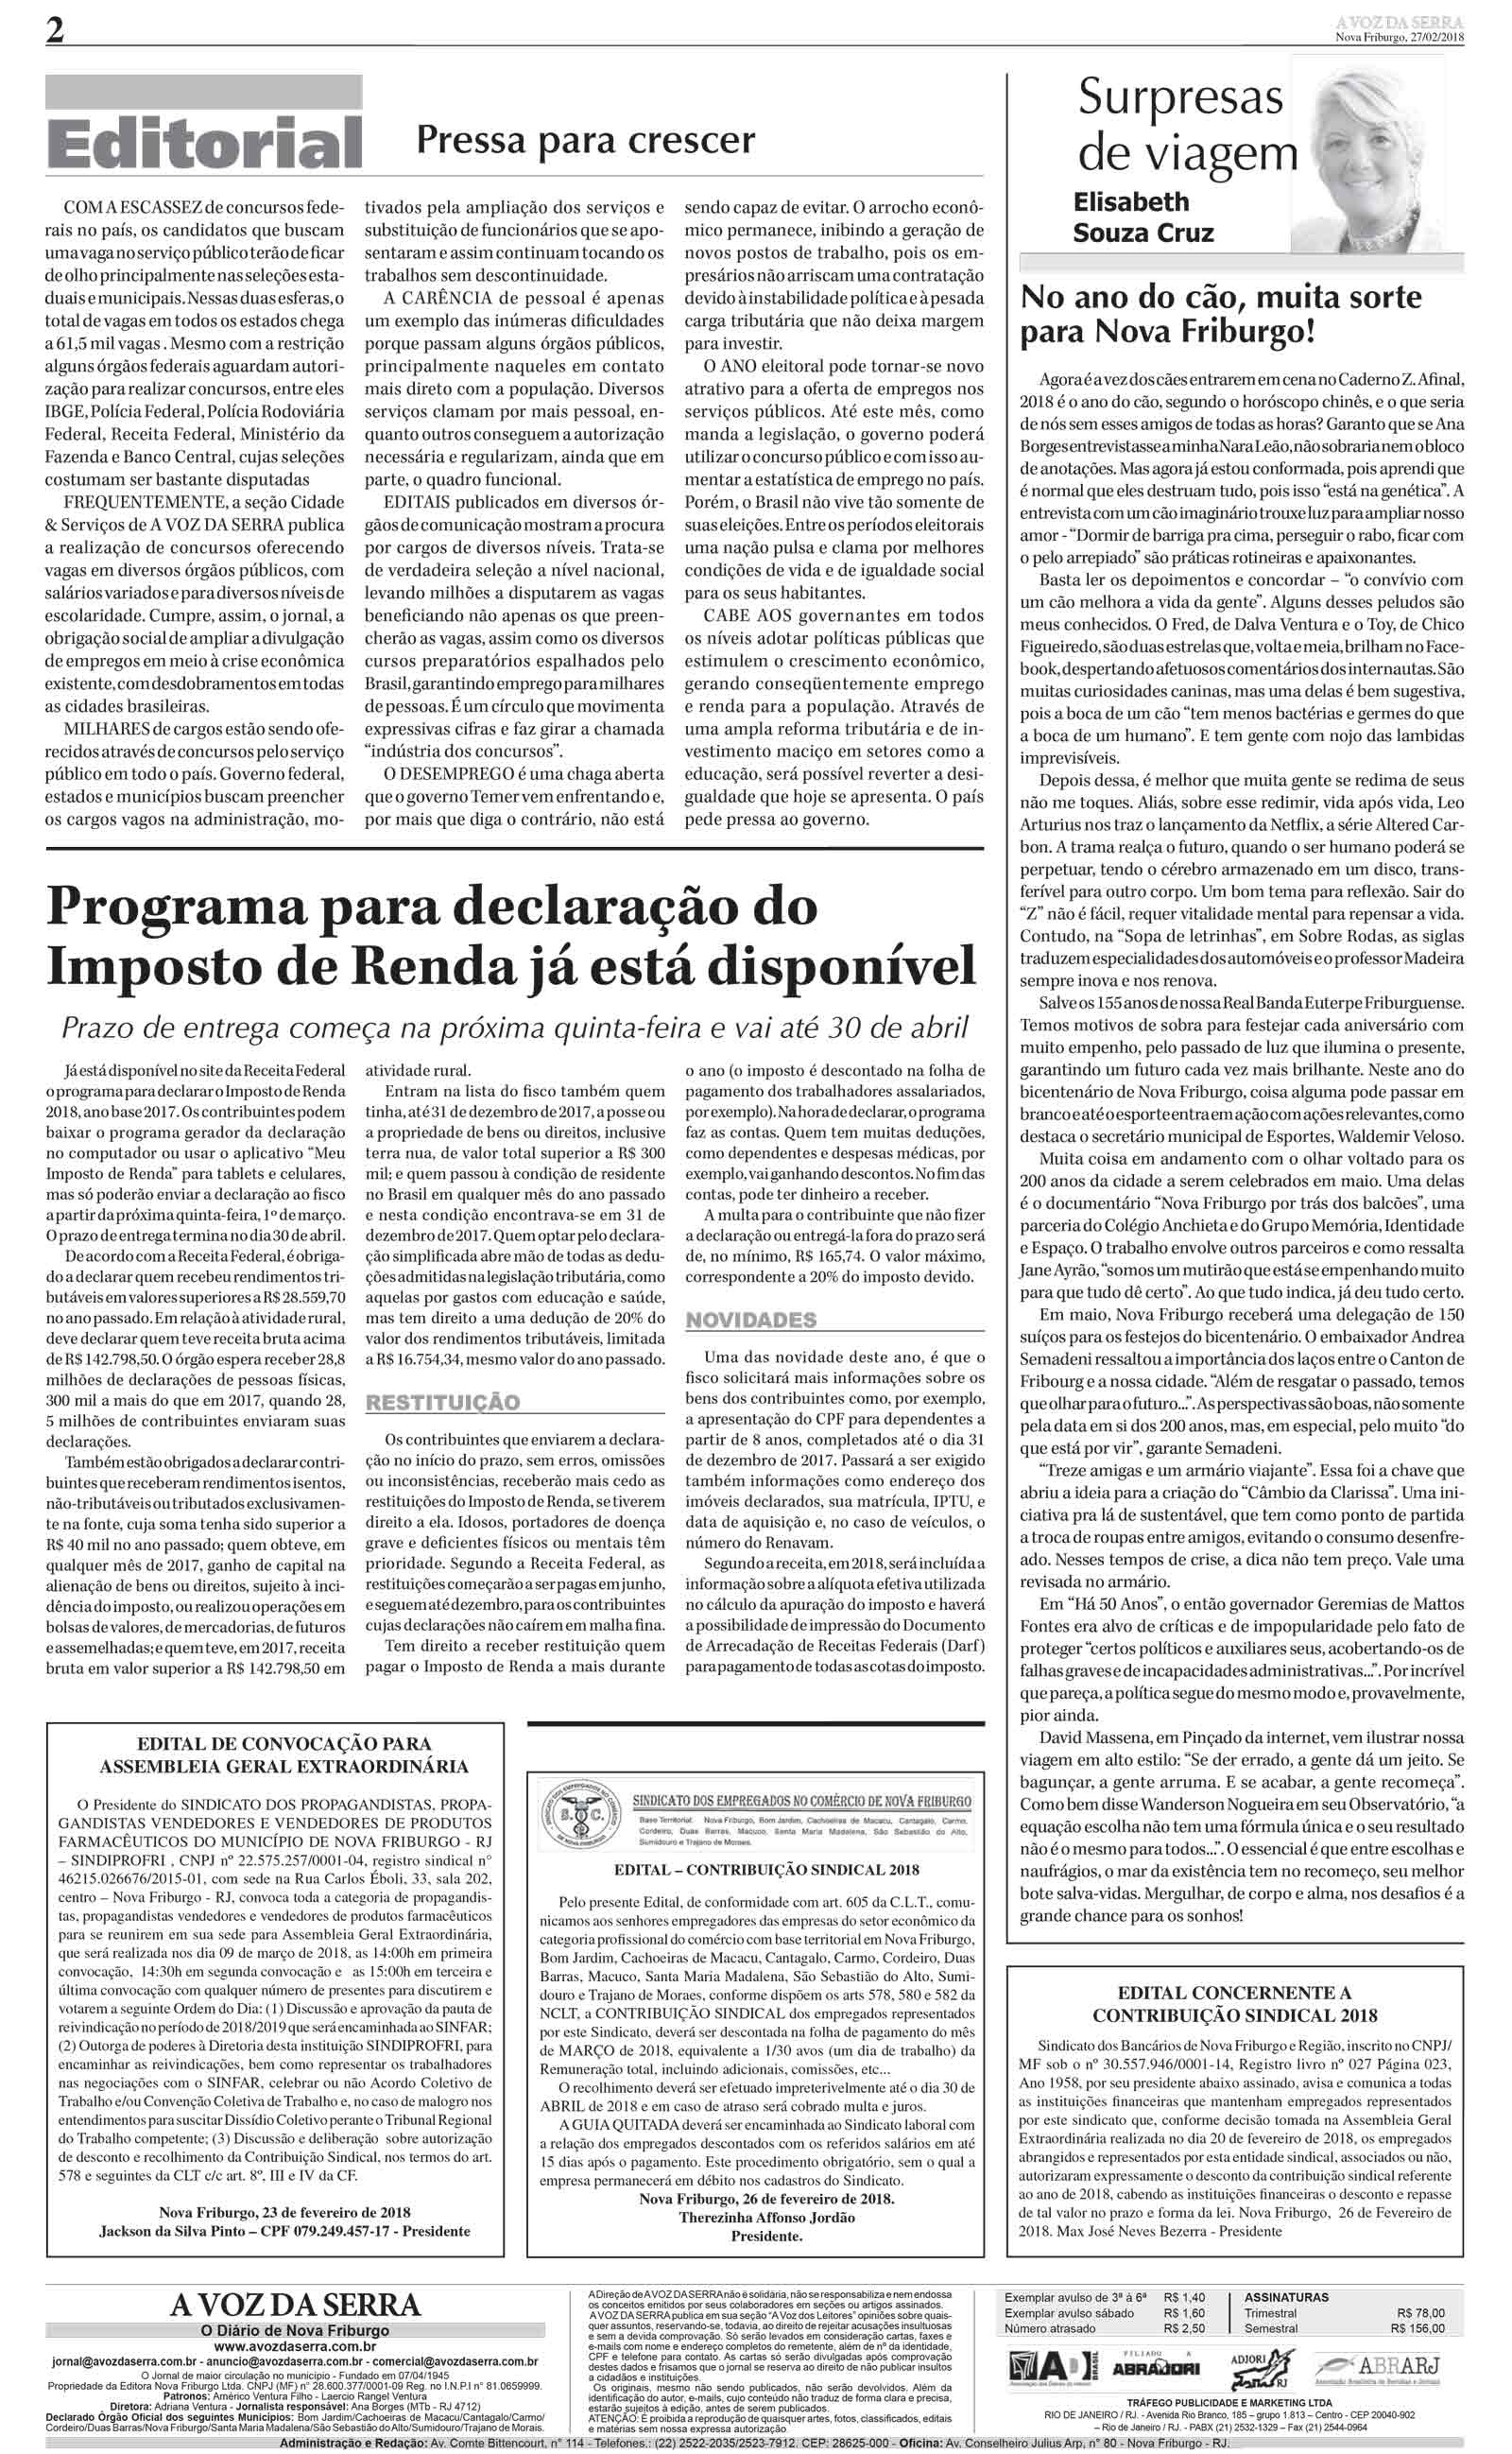 Edição De 27 De Fevereiro De 2018 Jornal A Voz Da Serra